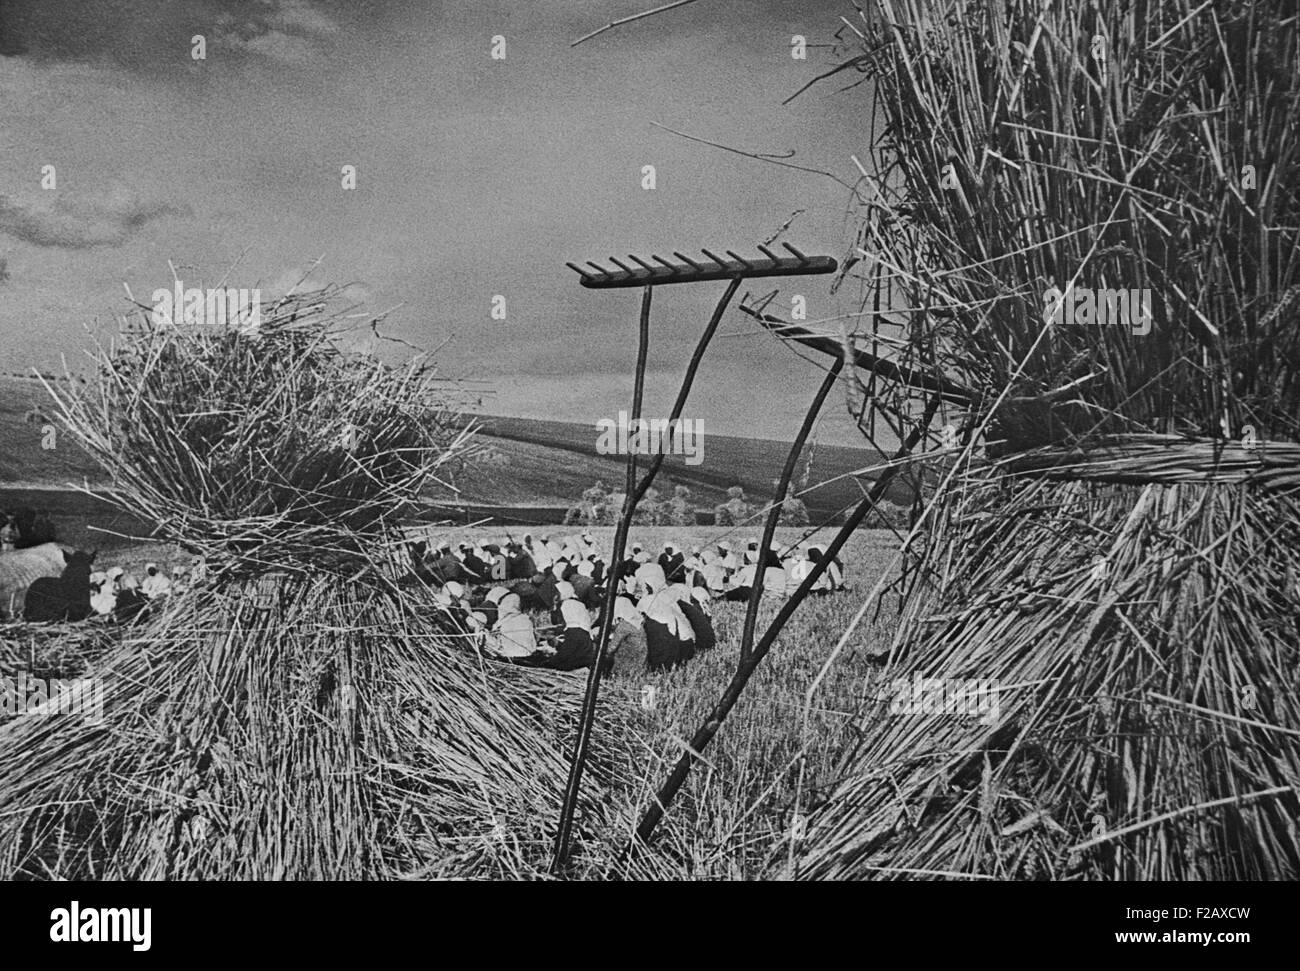 Abendessen Zeit während der Erntezeit auf einer kommunistischen Kolchose. Mehrere Dutzend Frauen sitzen in einem Feld mit Szene umrahmt von Heu-Bundles und Rechen. Ca. 1935-40. In der Nähe von Kiew, Ukraine, UdSSR. (BSLOC 2015 2 254) Stockfoto